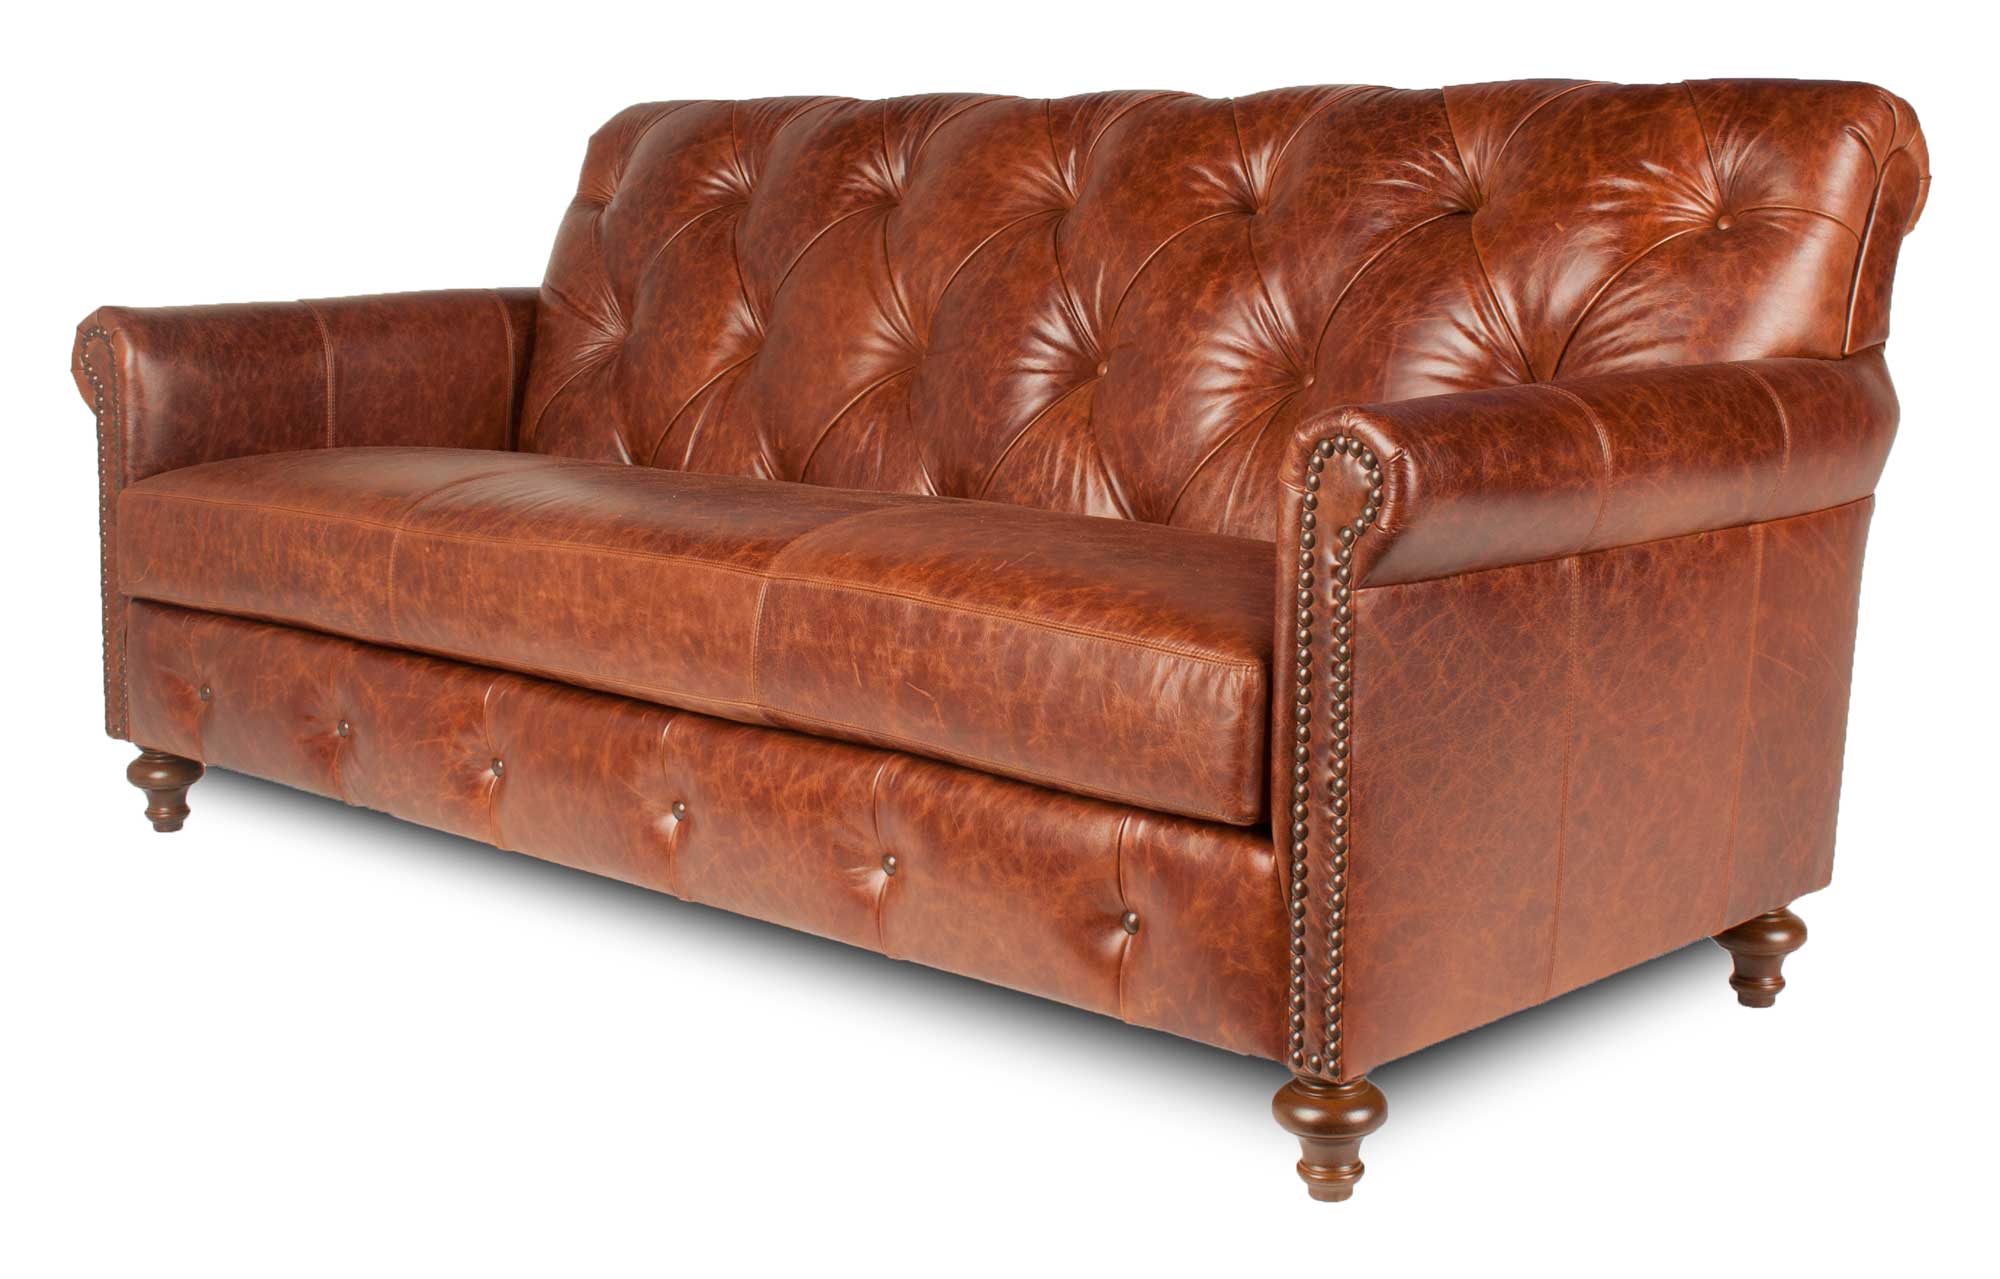 Tavern - Brown Leather Sofa -Angle